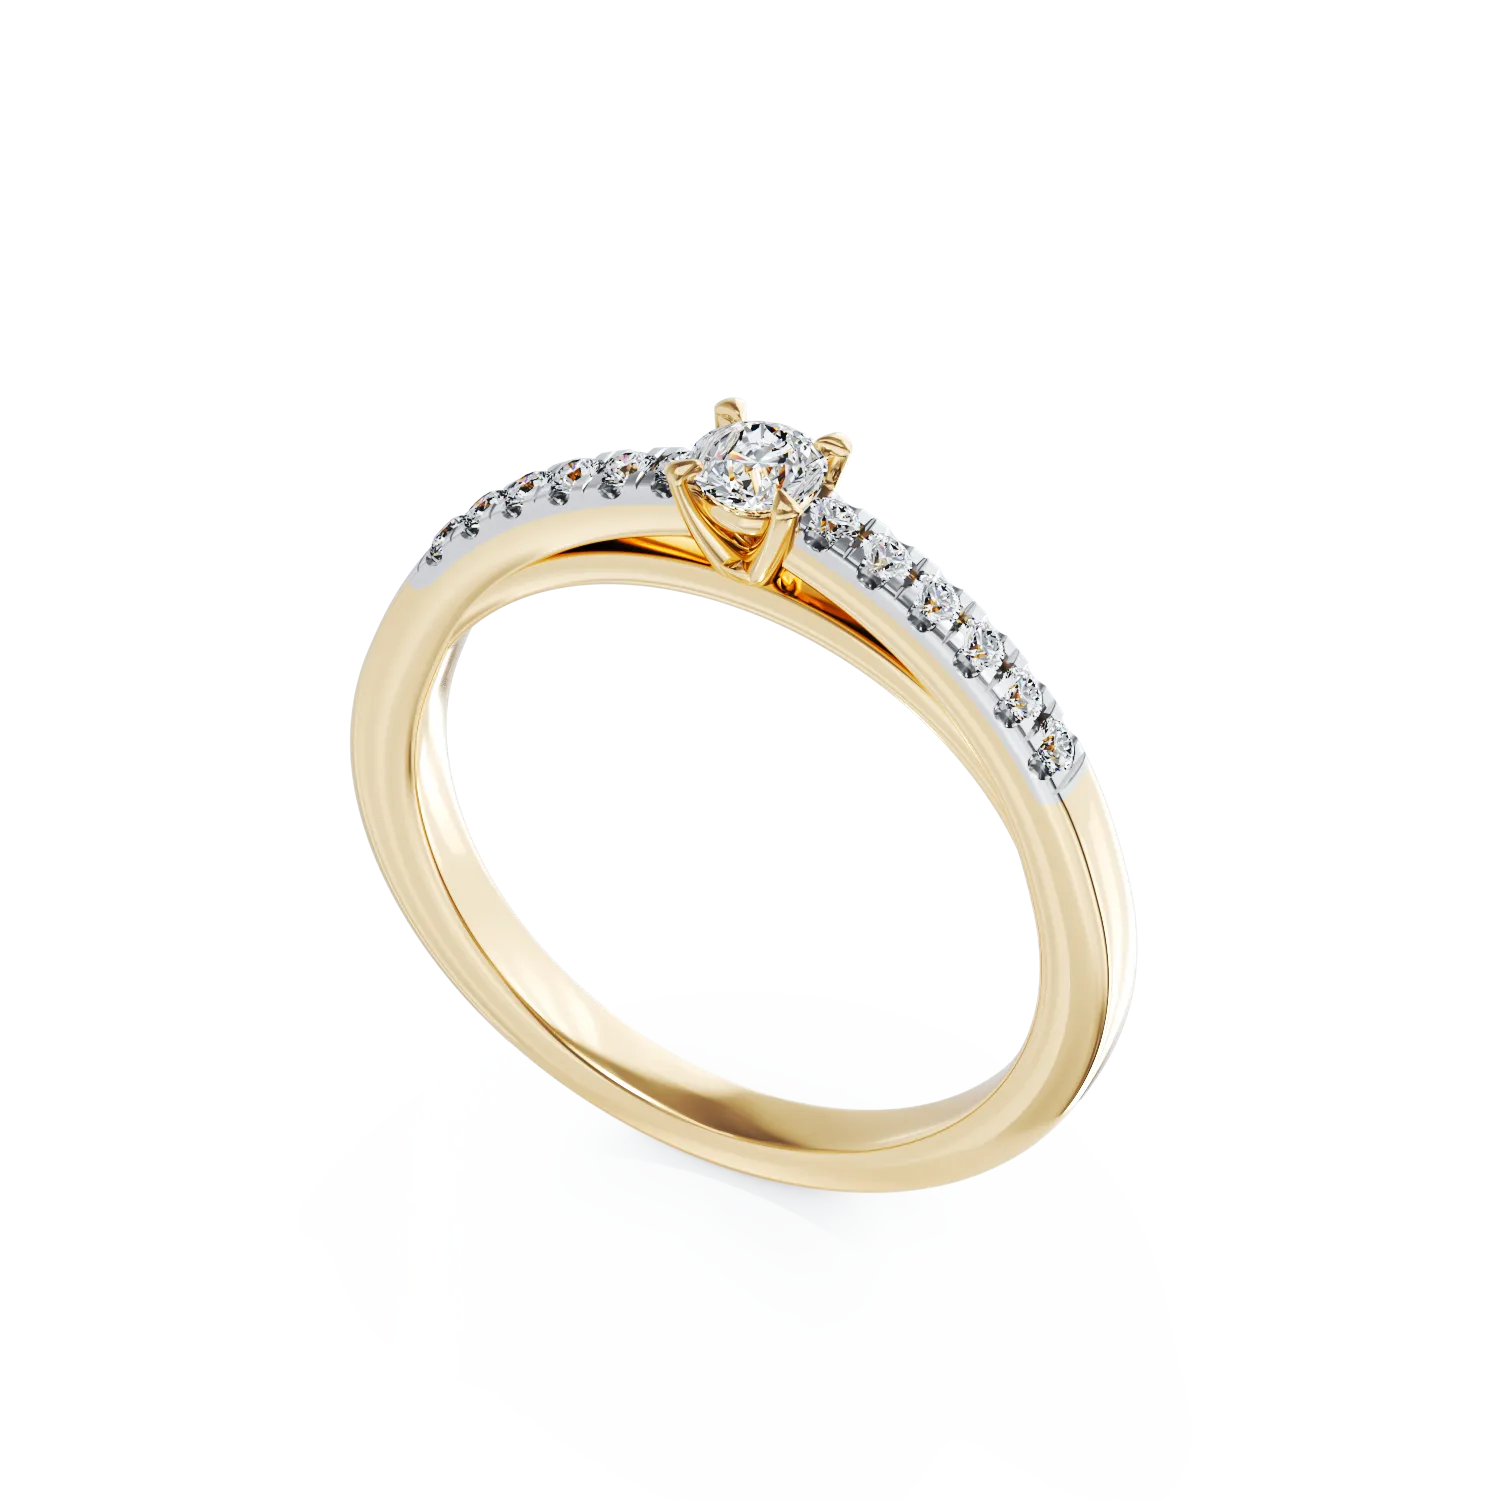 Eljegyzési gyűrű 18K-os sárga aranyból 0,3ct gyémánttal és 0,13ct gyémánttal. Gramm: 3,09